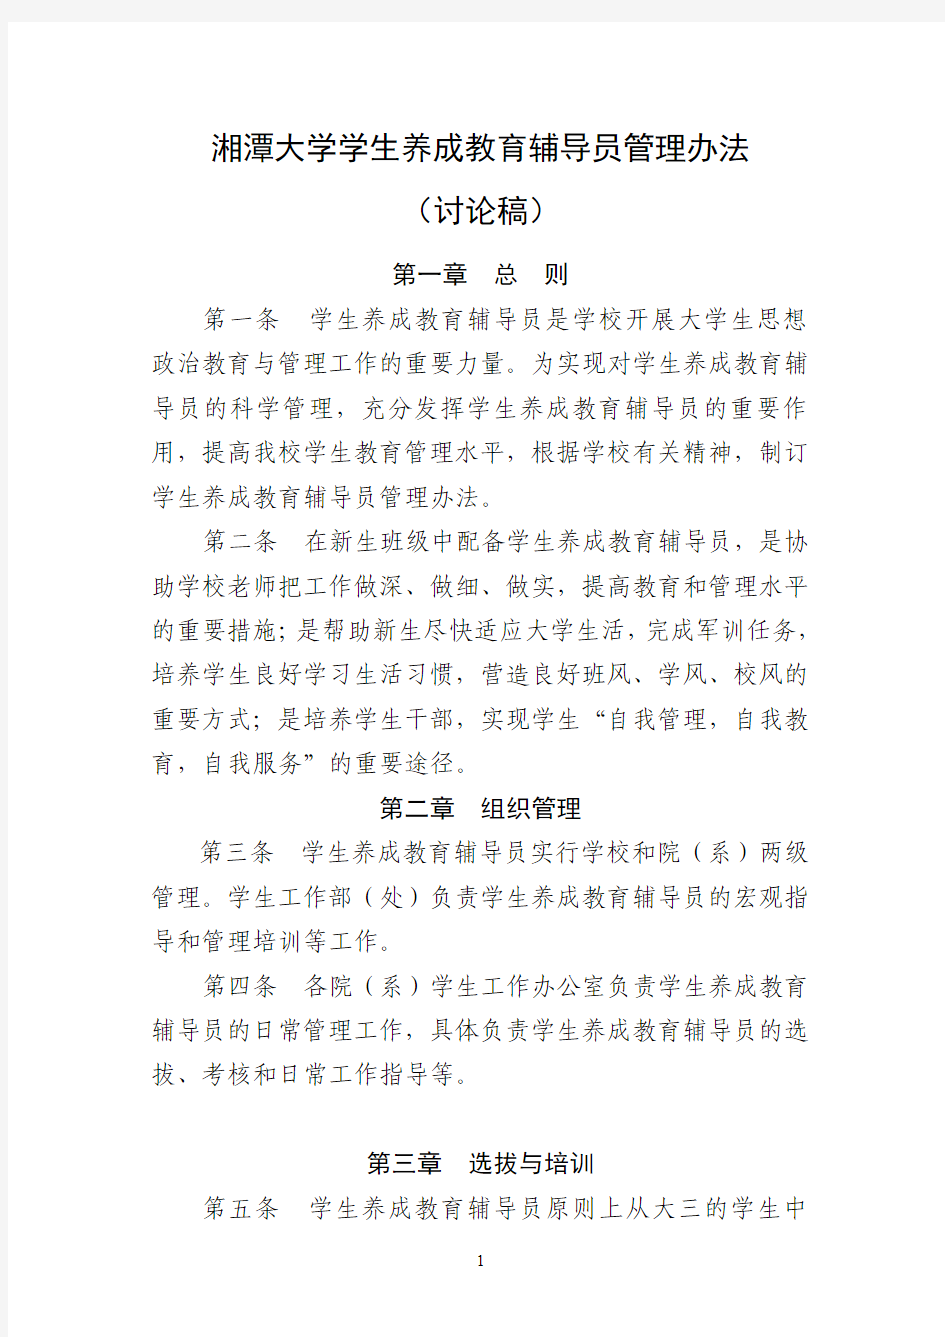 湘潭大学养成教育辅导员管理办法(修订稿)